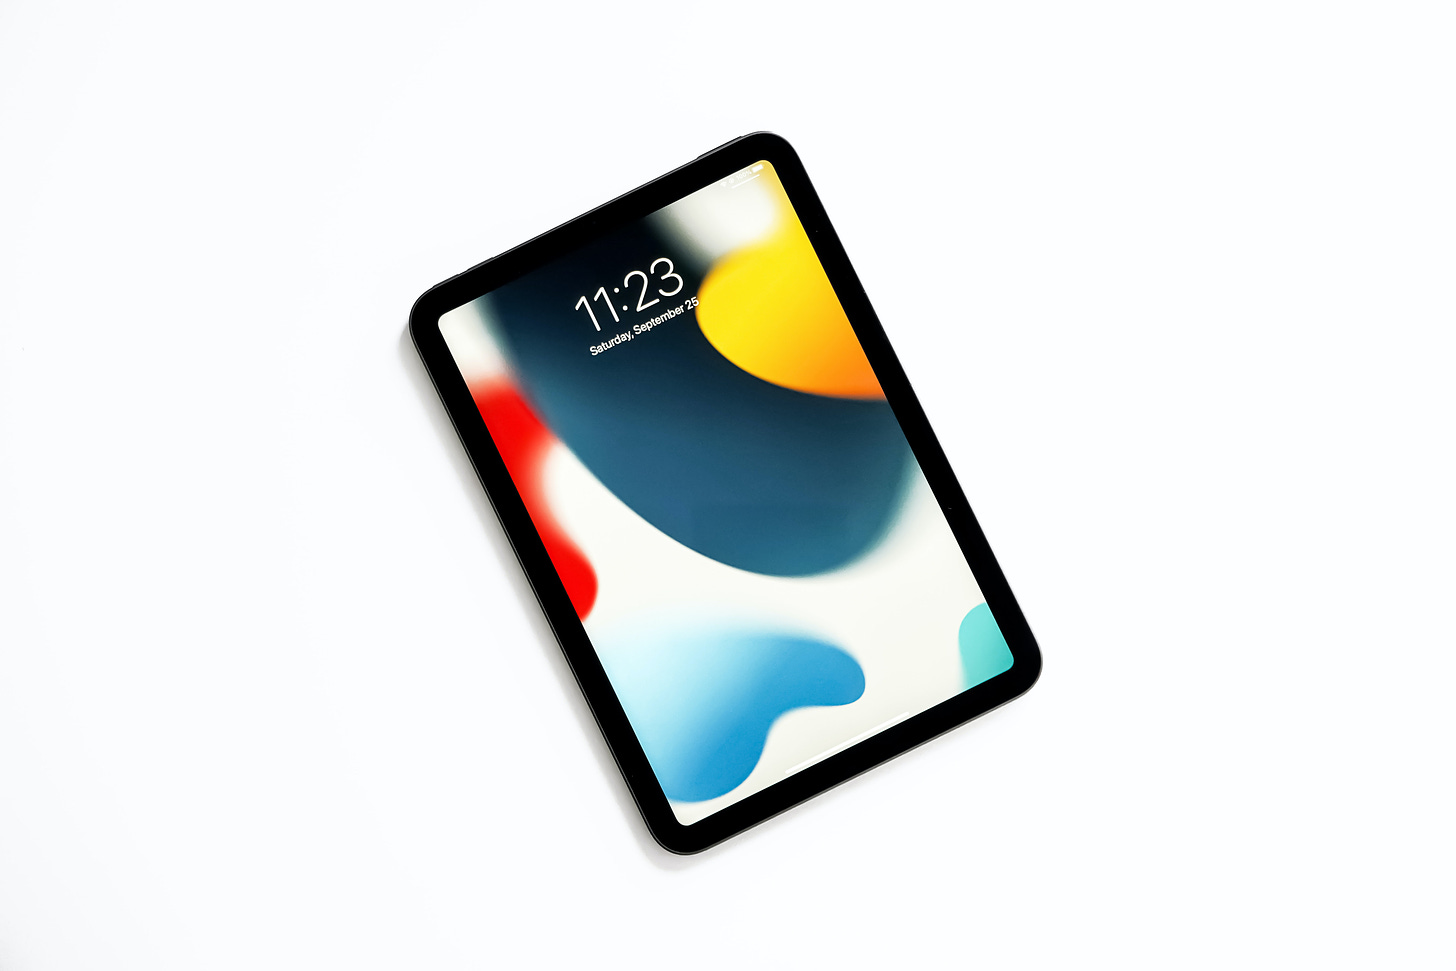 iPad mini with colorful screen